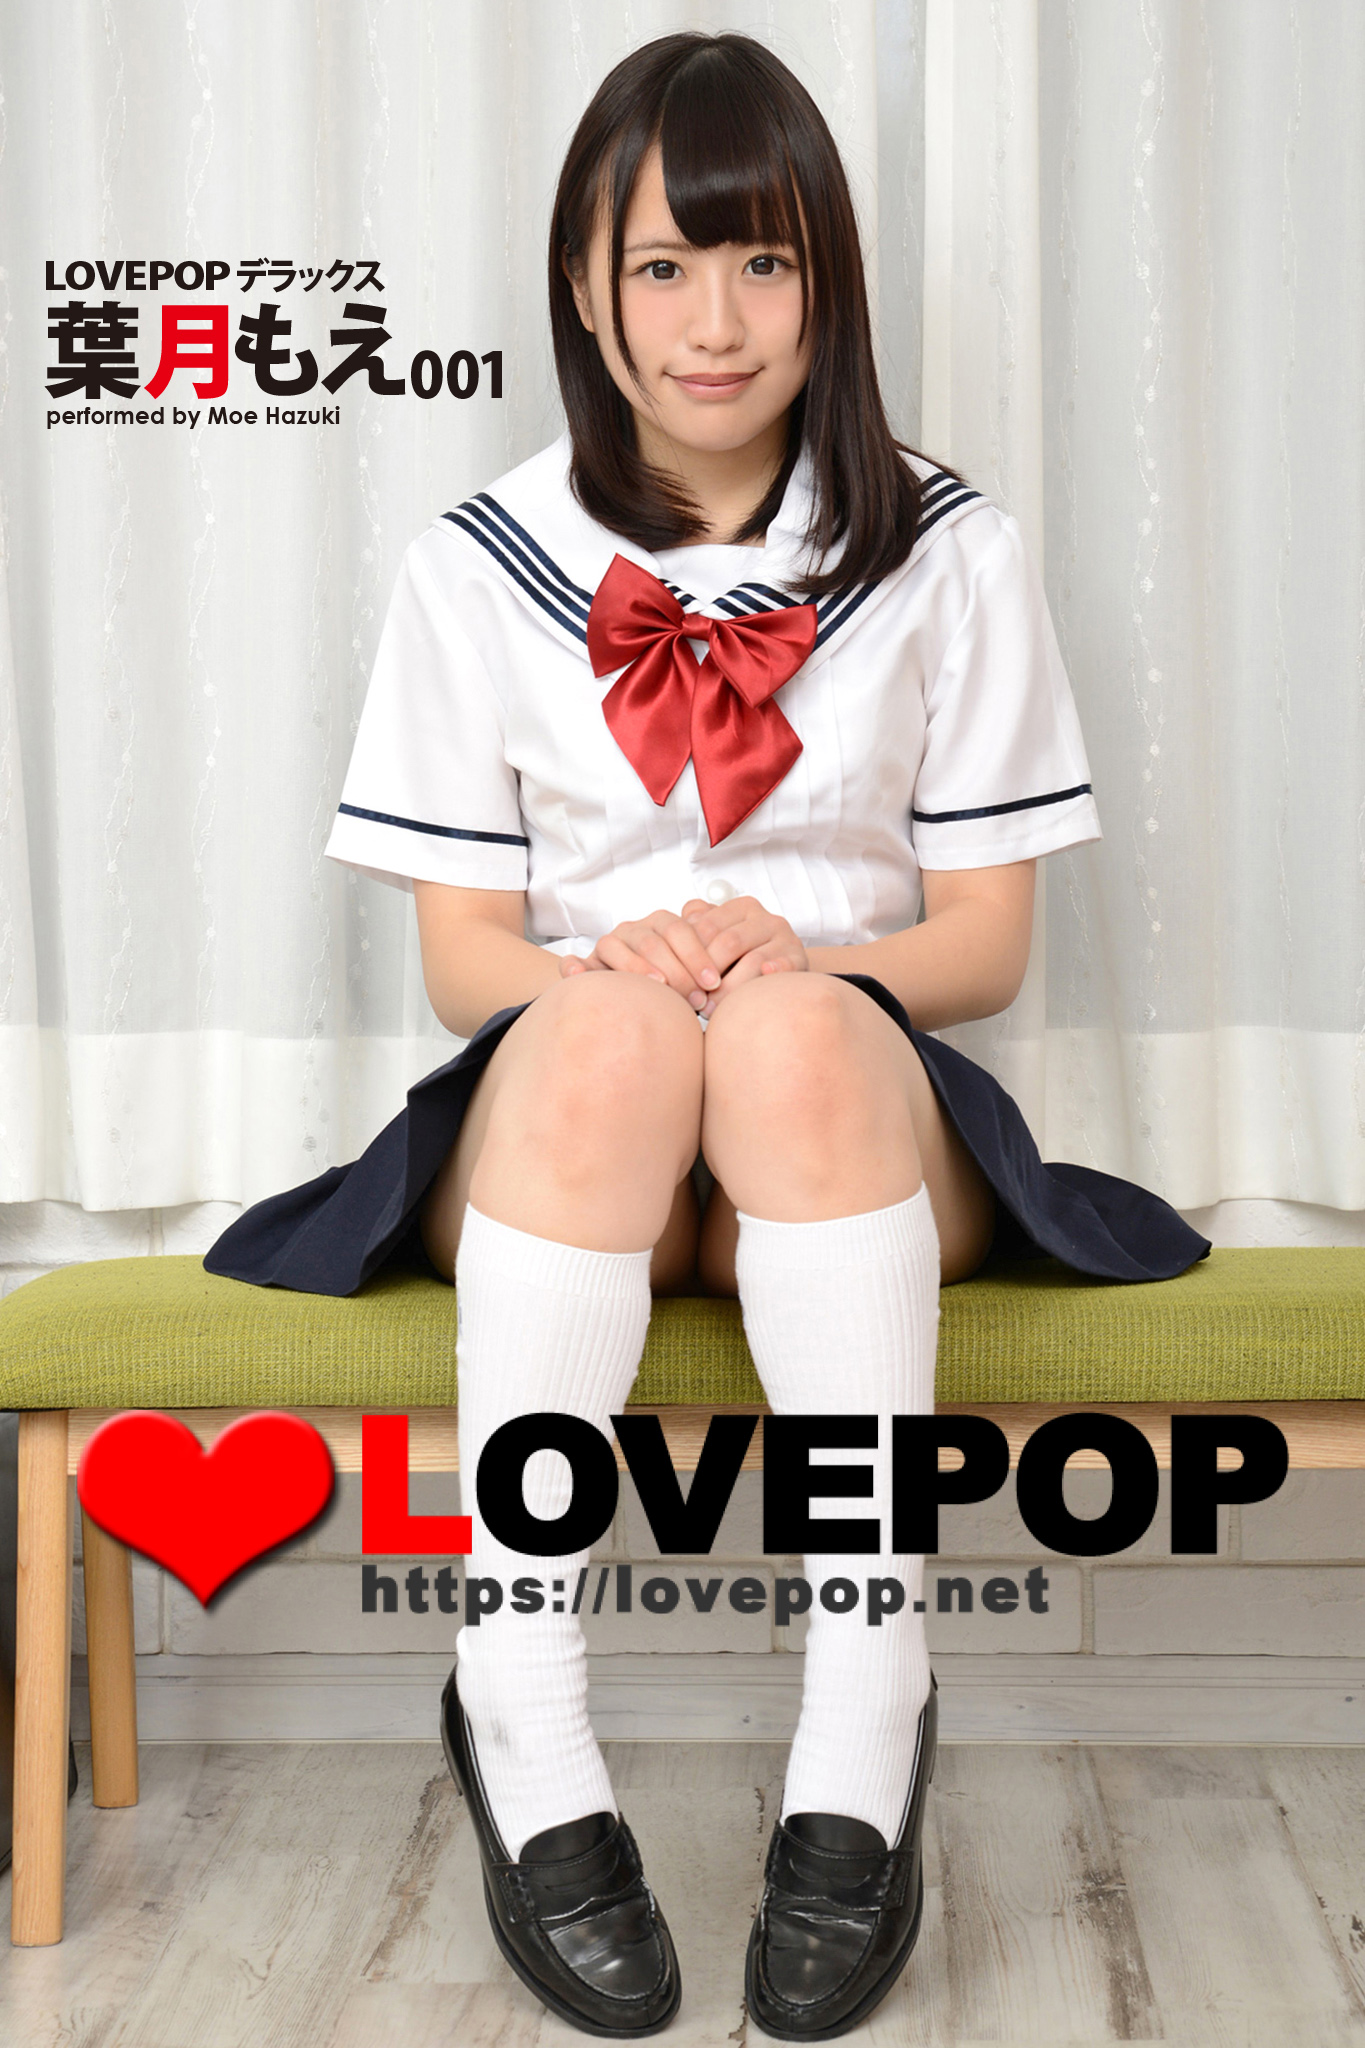 LOVEPOP 高校生 LOVEPOP デラックス 佐々木夏菜 002(写真集) - 電子書籍 | U ...